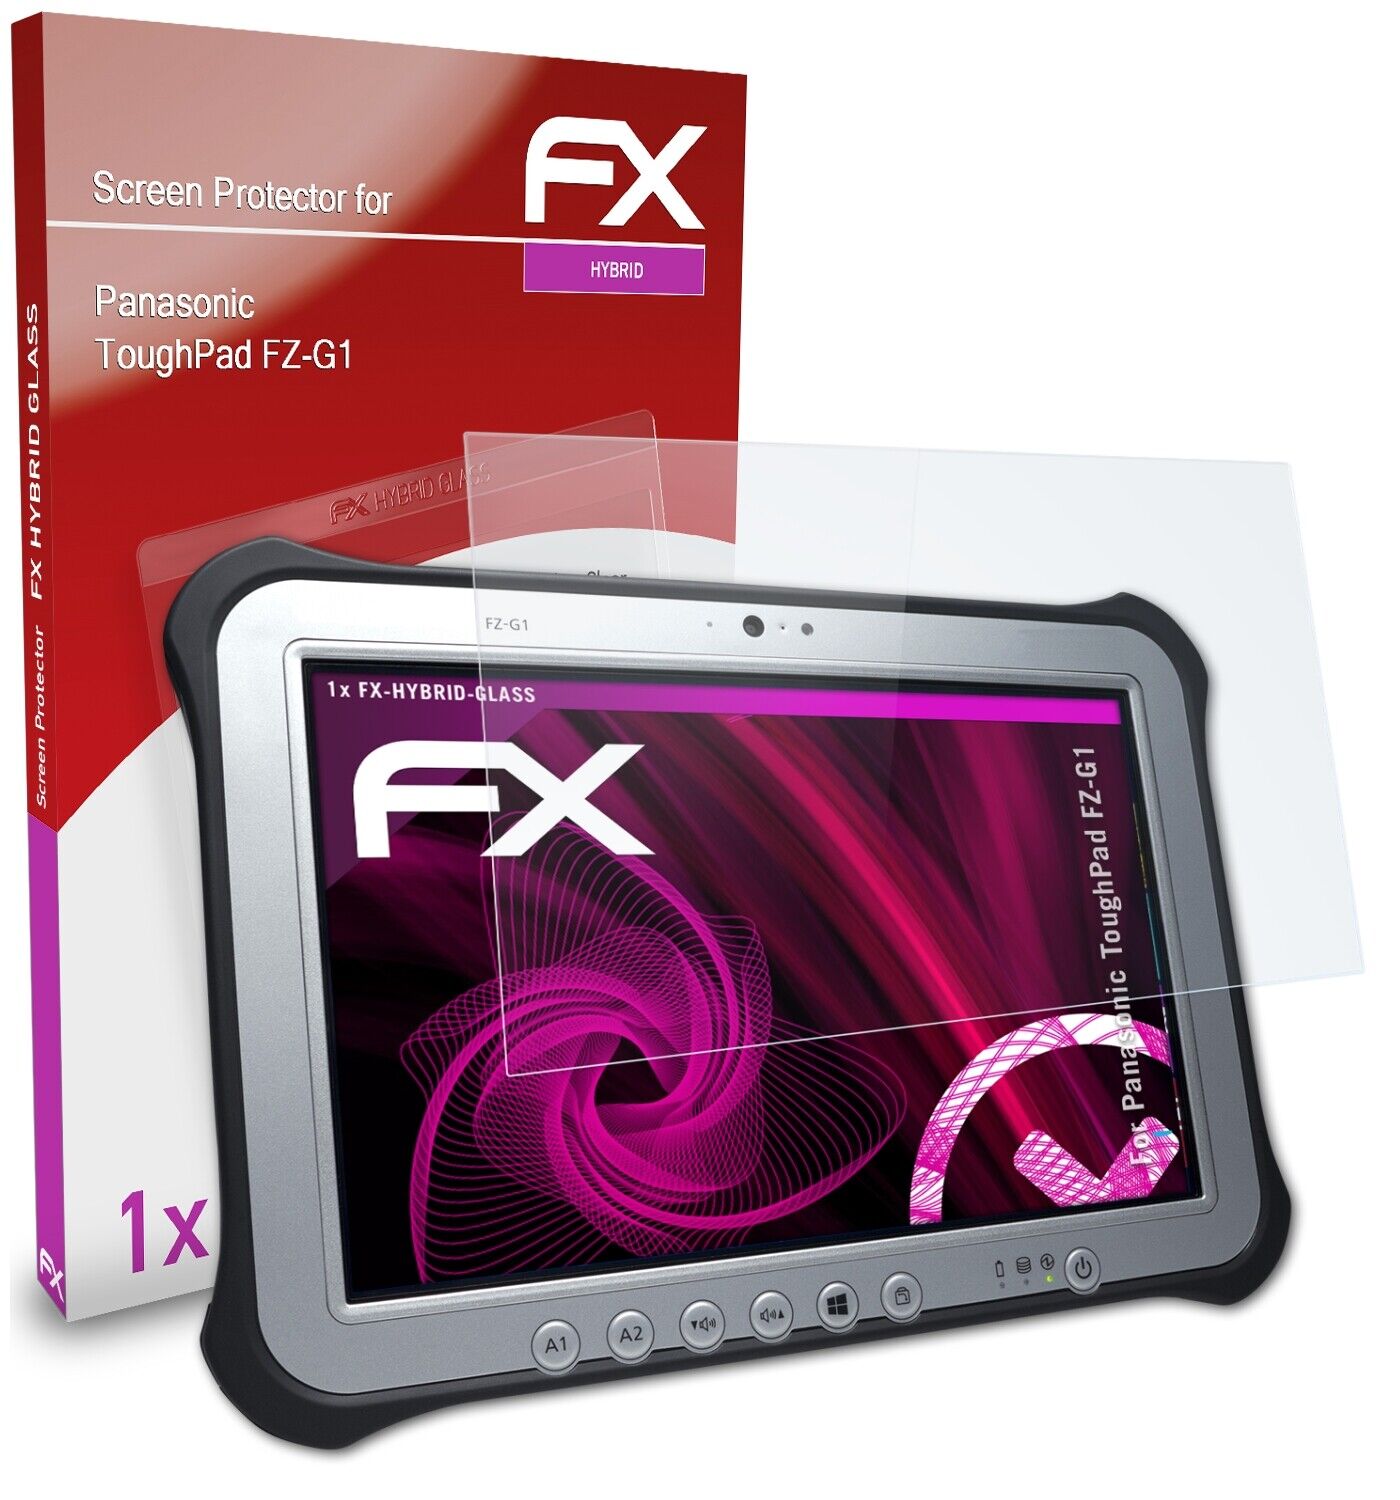 atFoliX Glass Protector for Panasonic ToughPad FZ-G1 9H Hybrid-Glass